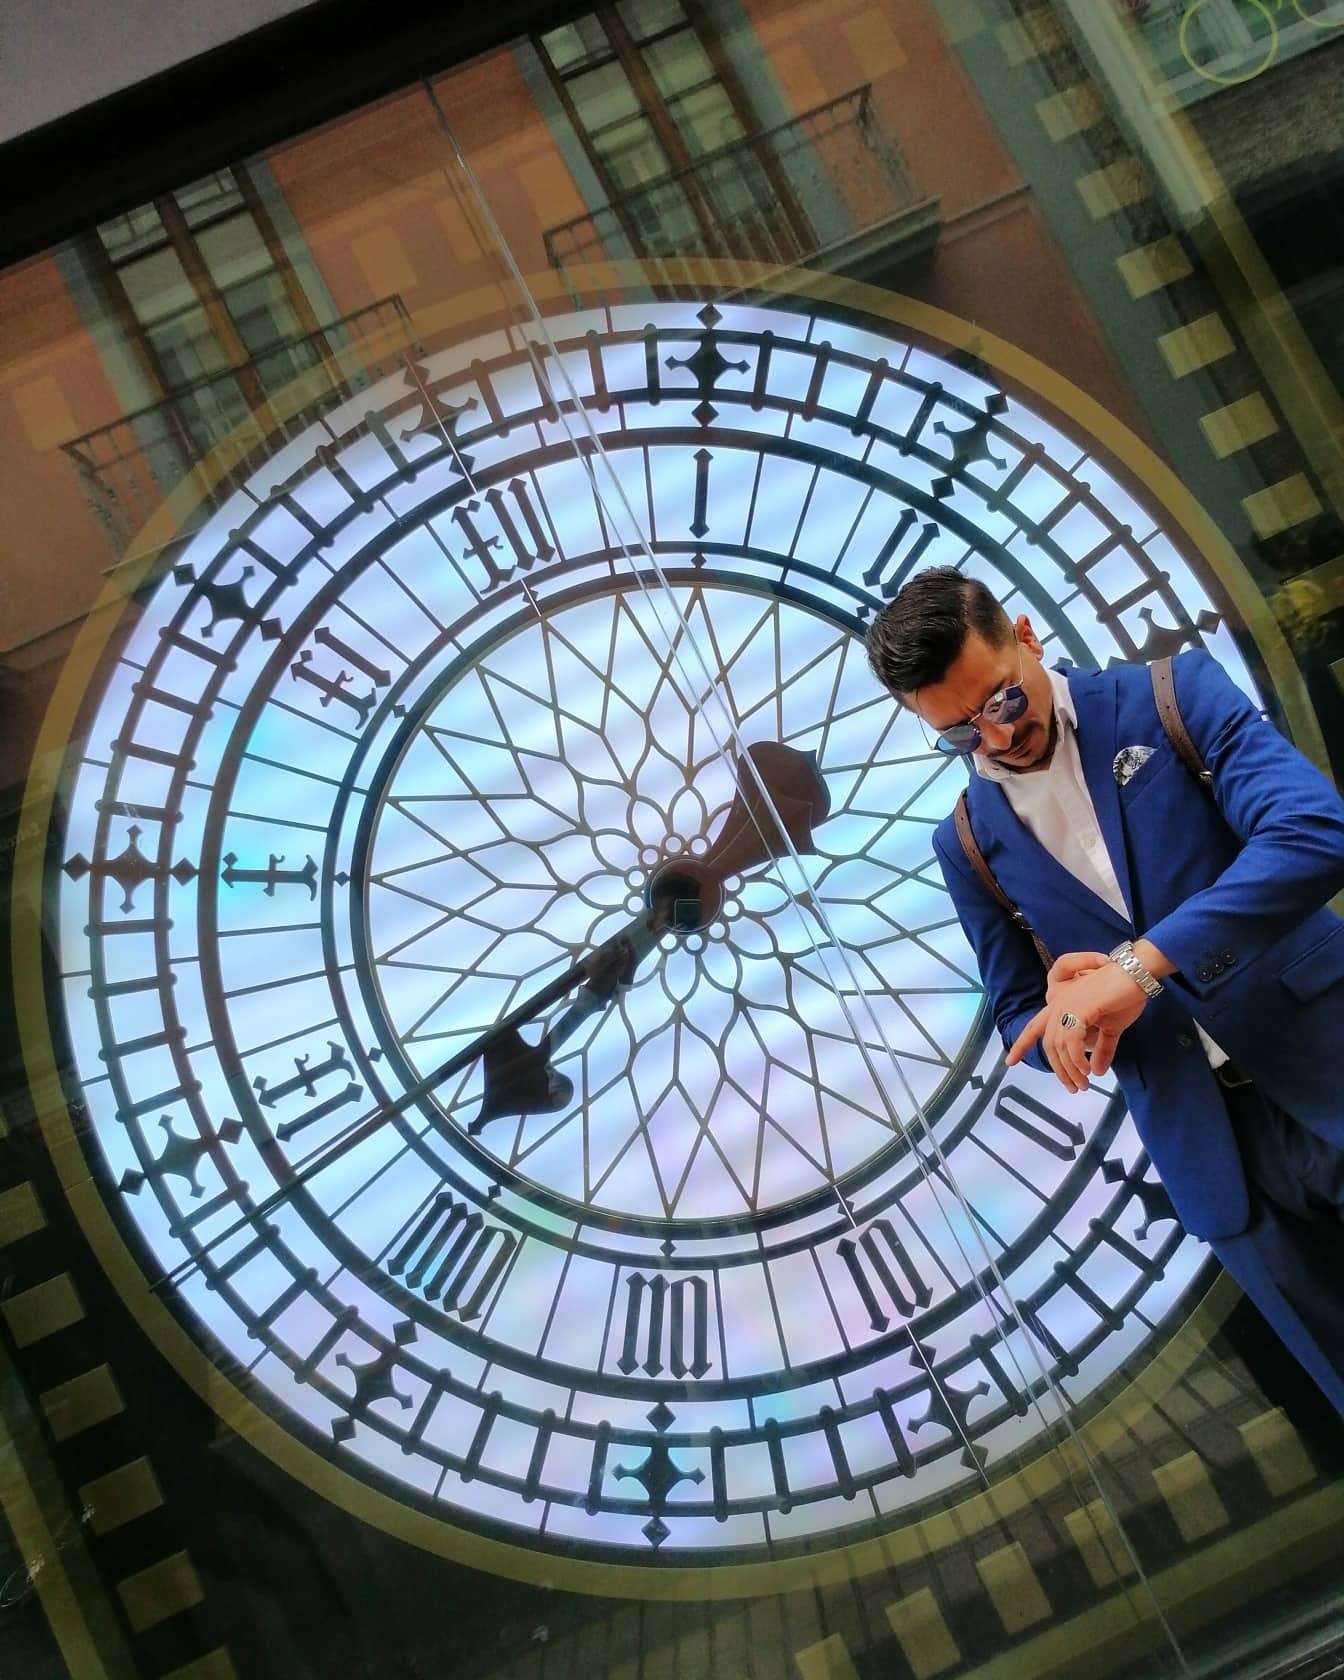 Affärsman i en kostym som ser på armbandsur med reflektion av den stora klockan på fönstret i bakgrunden